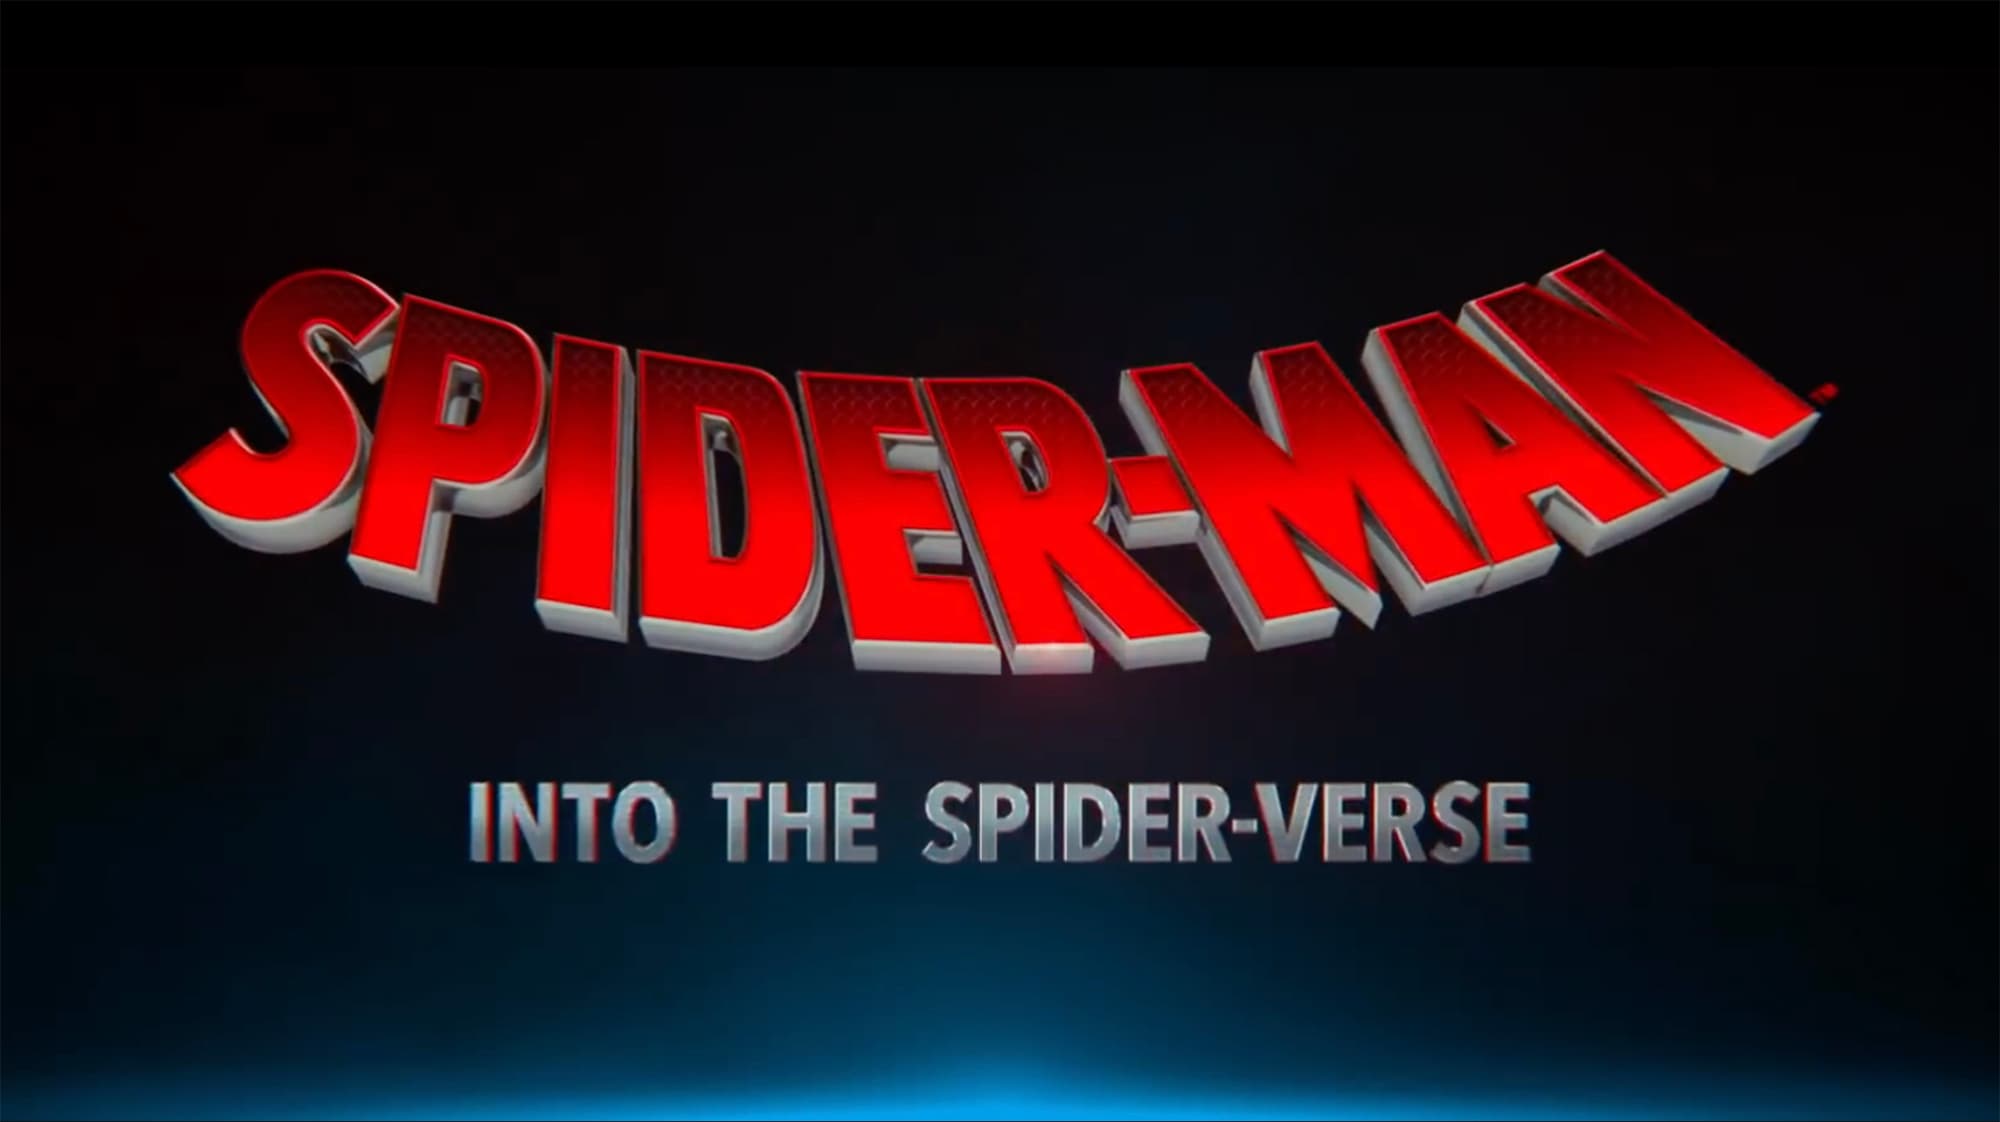 Spider-Man: Into the Spider-Verse logo